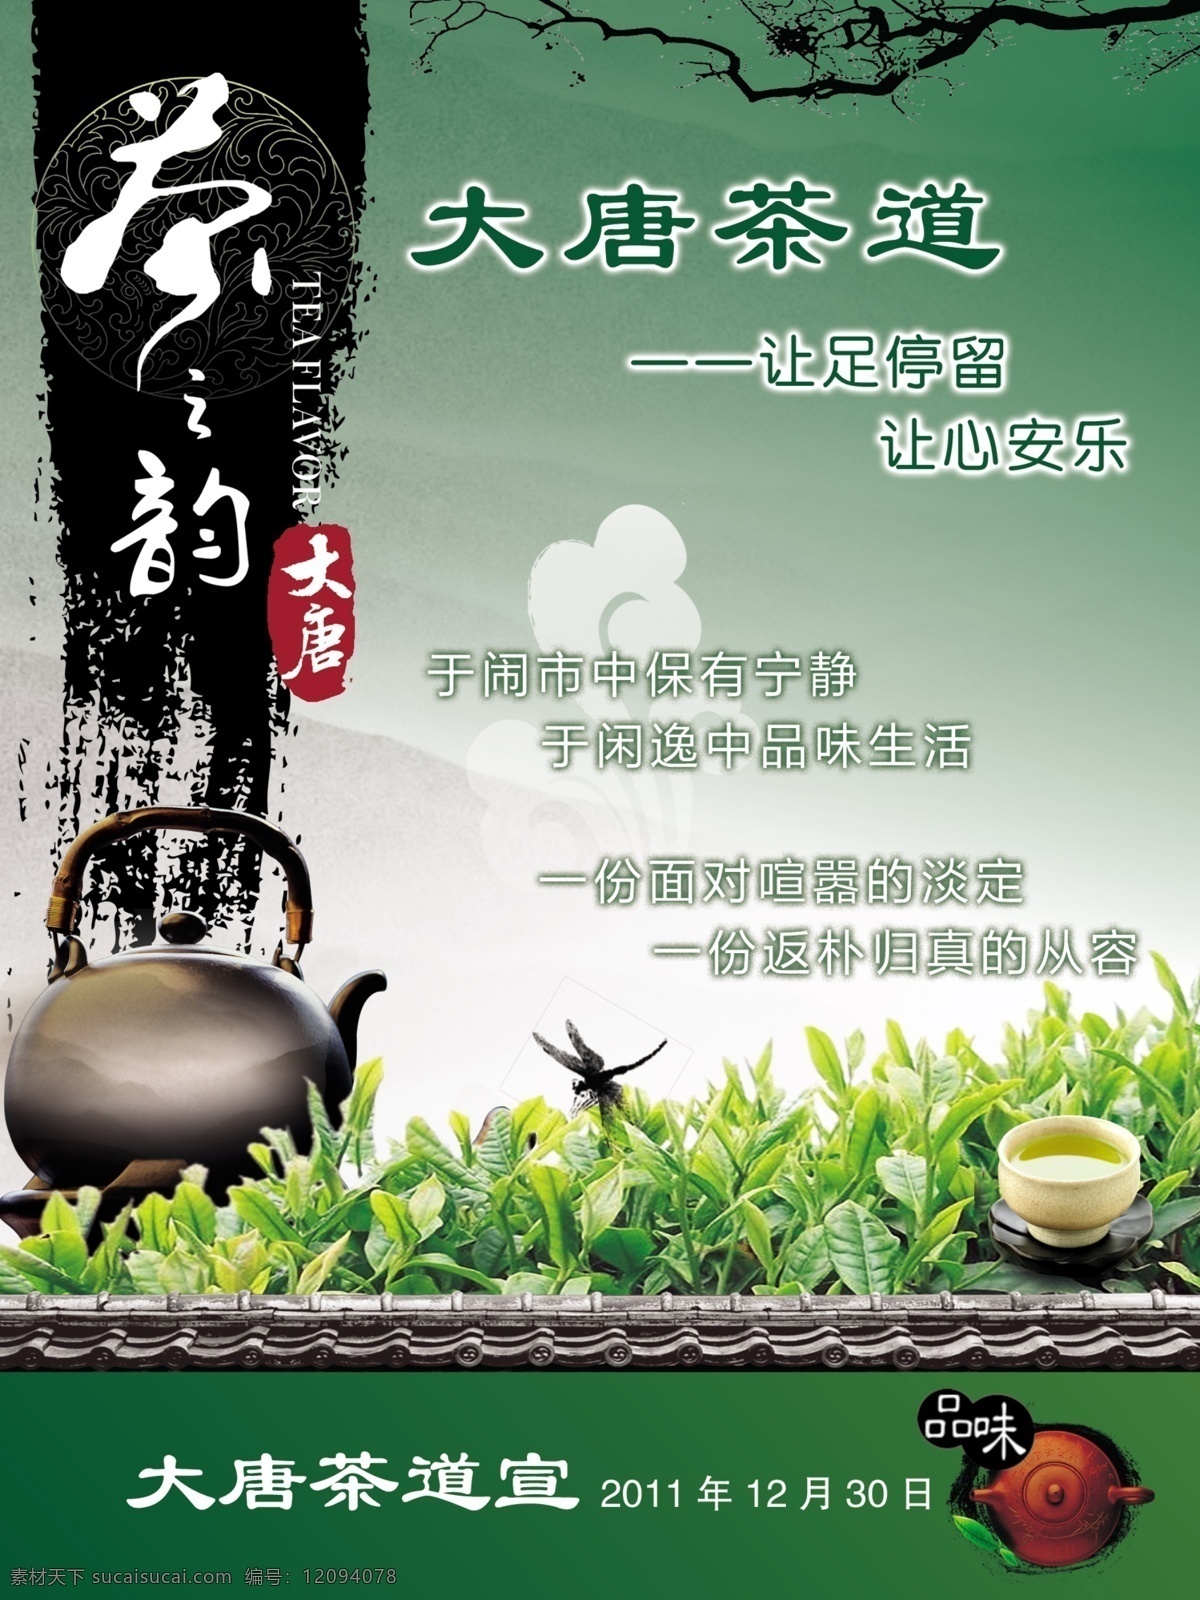 大唐 茶 韵 茶道 海报 茶道图片 茶文化 茶叶 绿茶 中国风 紫砂壶 中国风海报